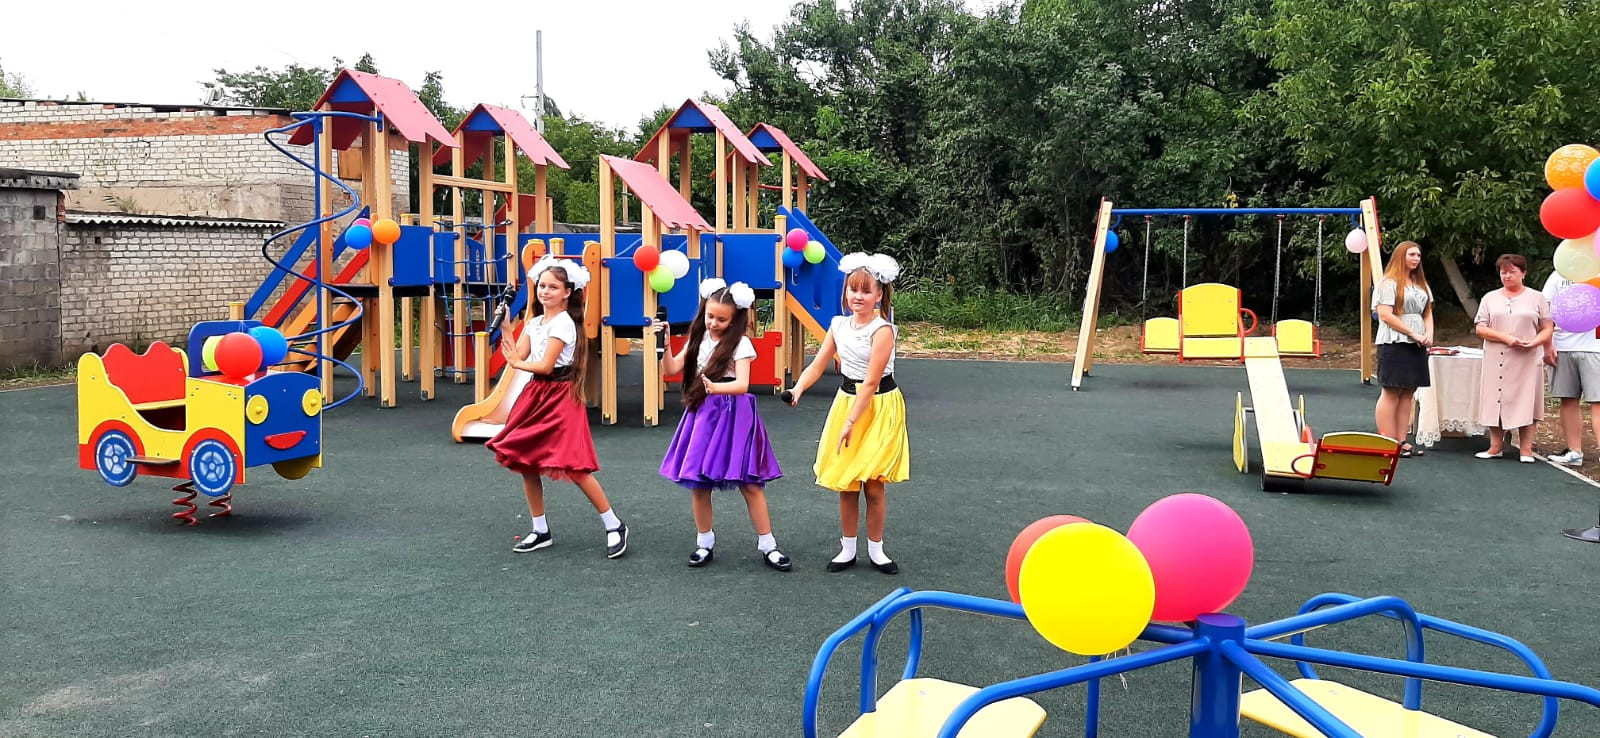 Новую детскую площадку открыли в селе Левокумка на Ставрополье